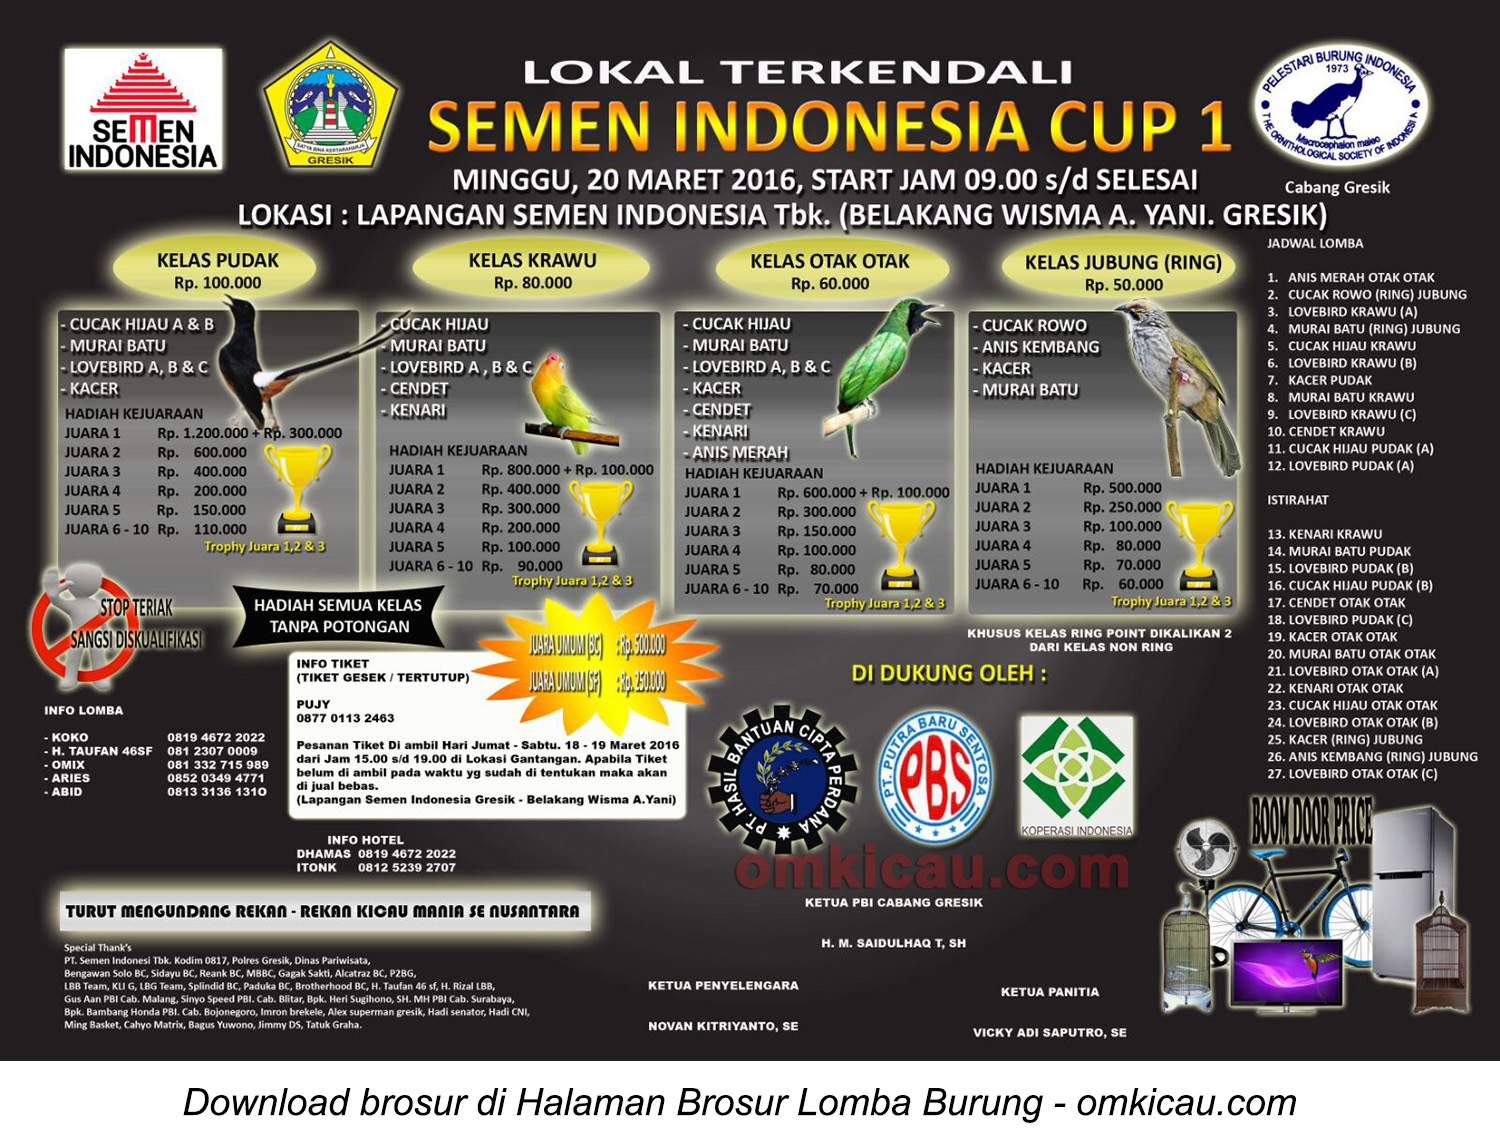 Brosur Lomba Lokal Terkendali Semen Indonesia Cup 1, Gresik, 20 Maret 2016